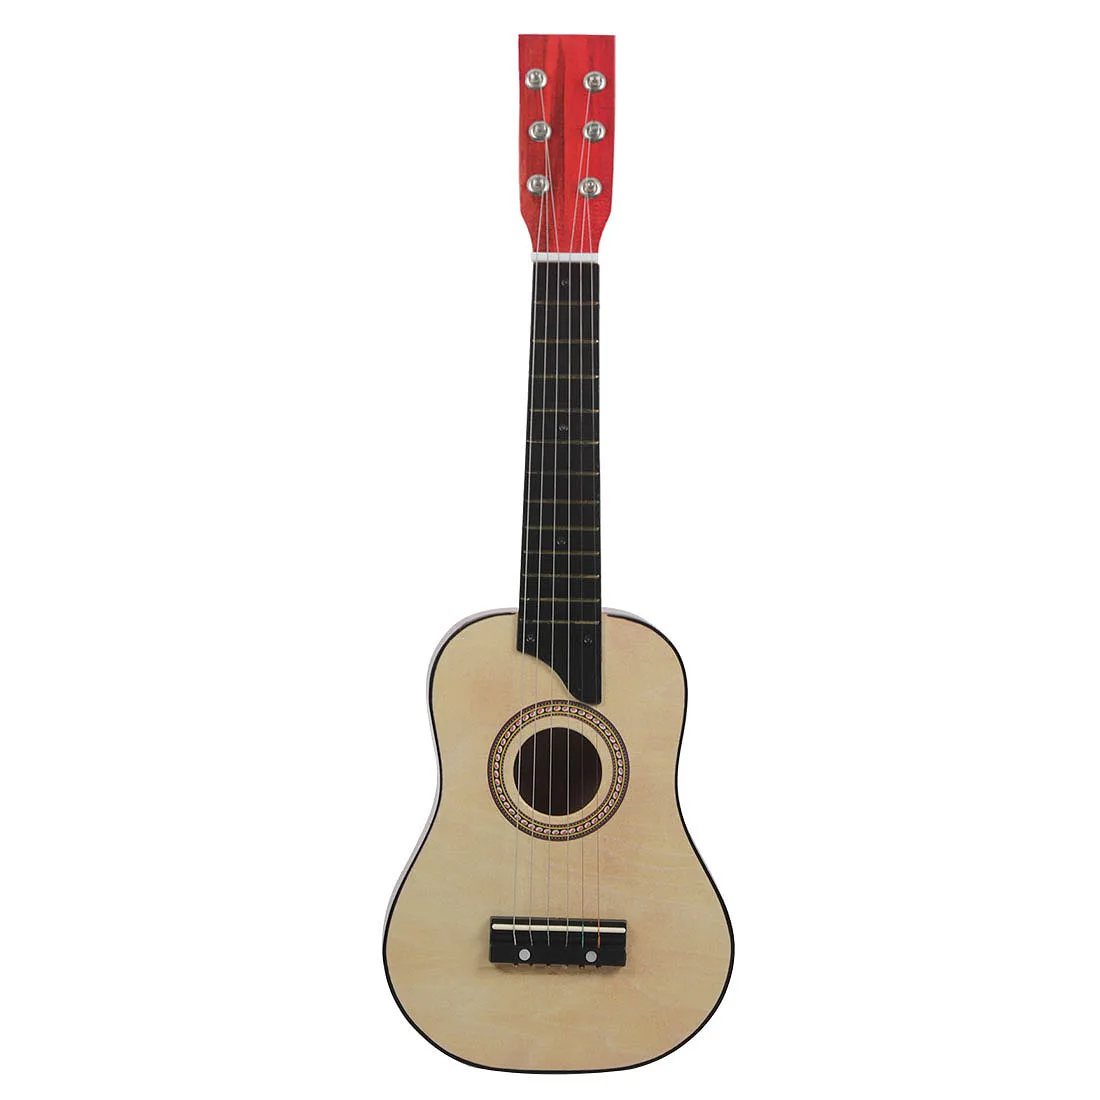 Мини-гитара Irin из липы 25 дюймов 12 ладов 6 струн | Спорт и развлечения